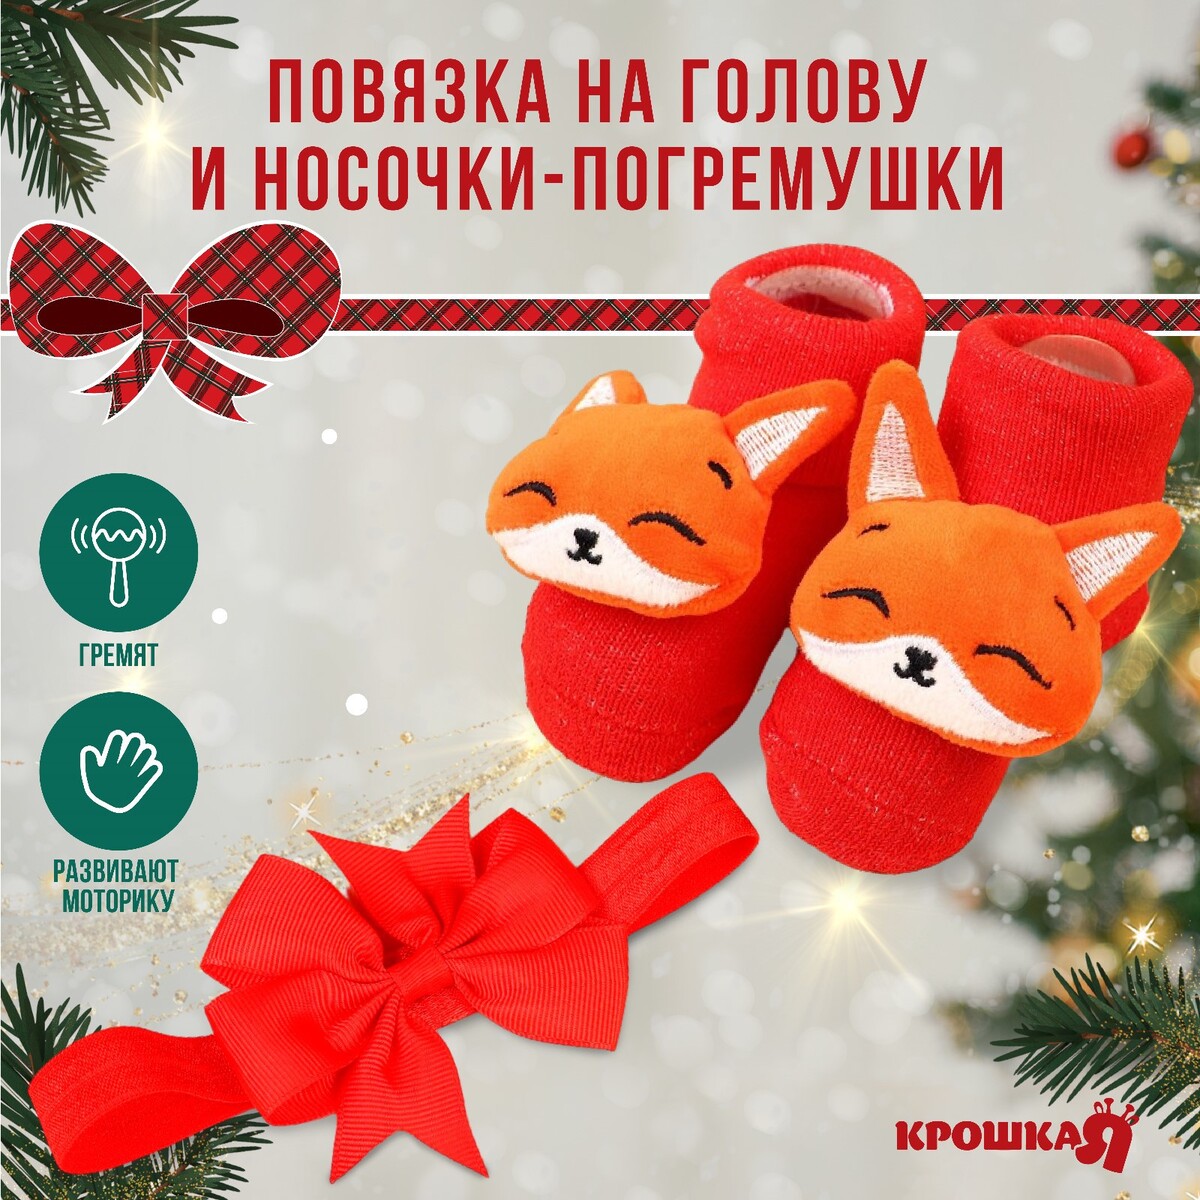 Подарочный набор новогодний: повязка на голову и носочки - погремушки на ножки